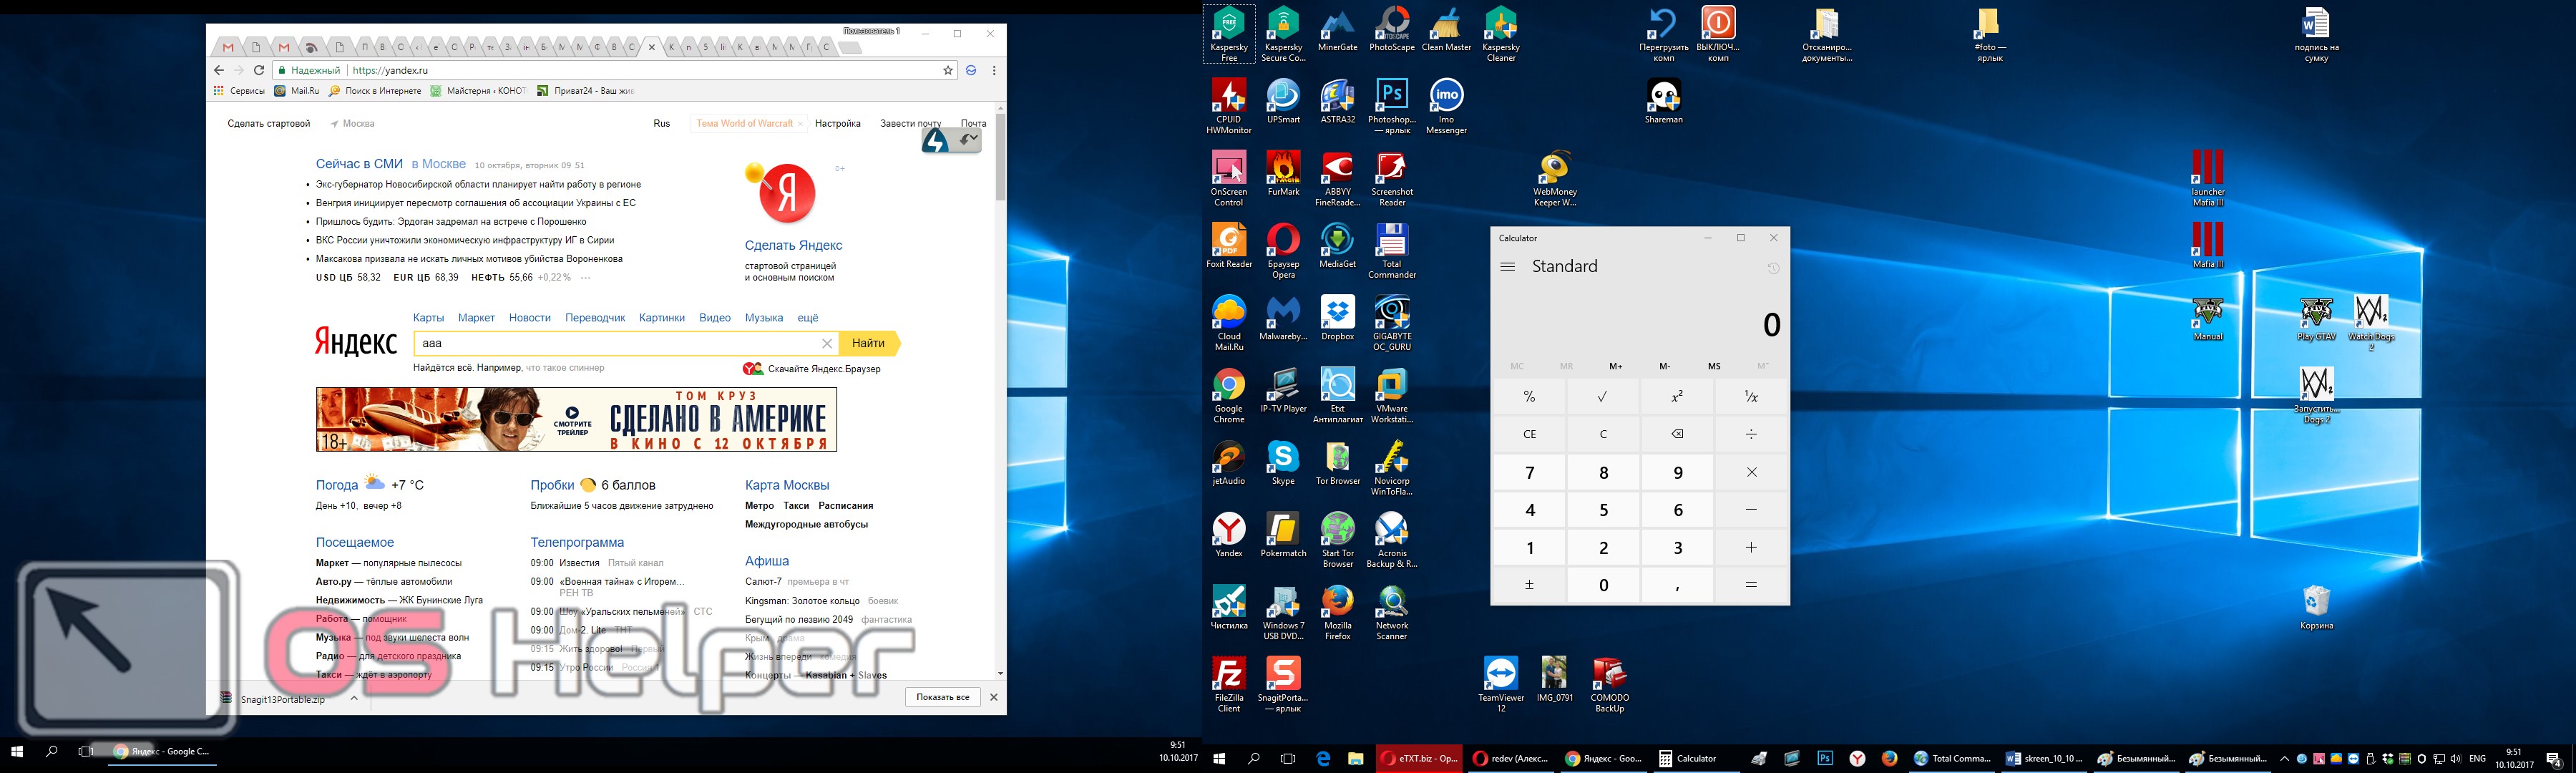 Скриншот на ПК С Windows 10